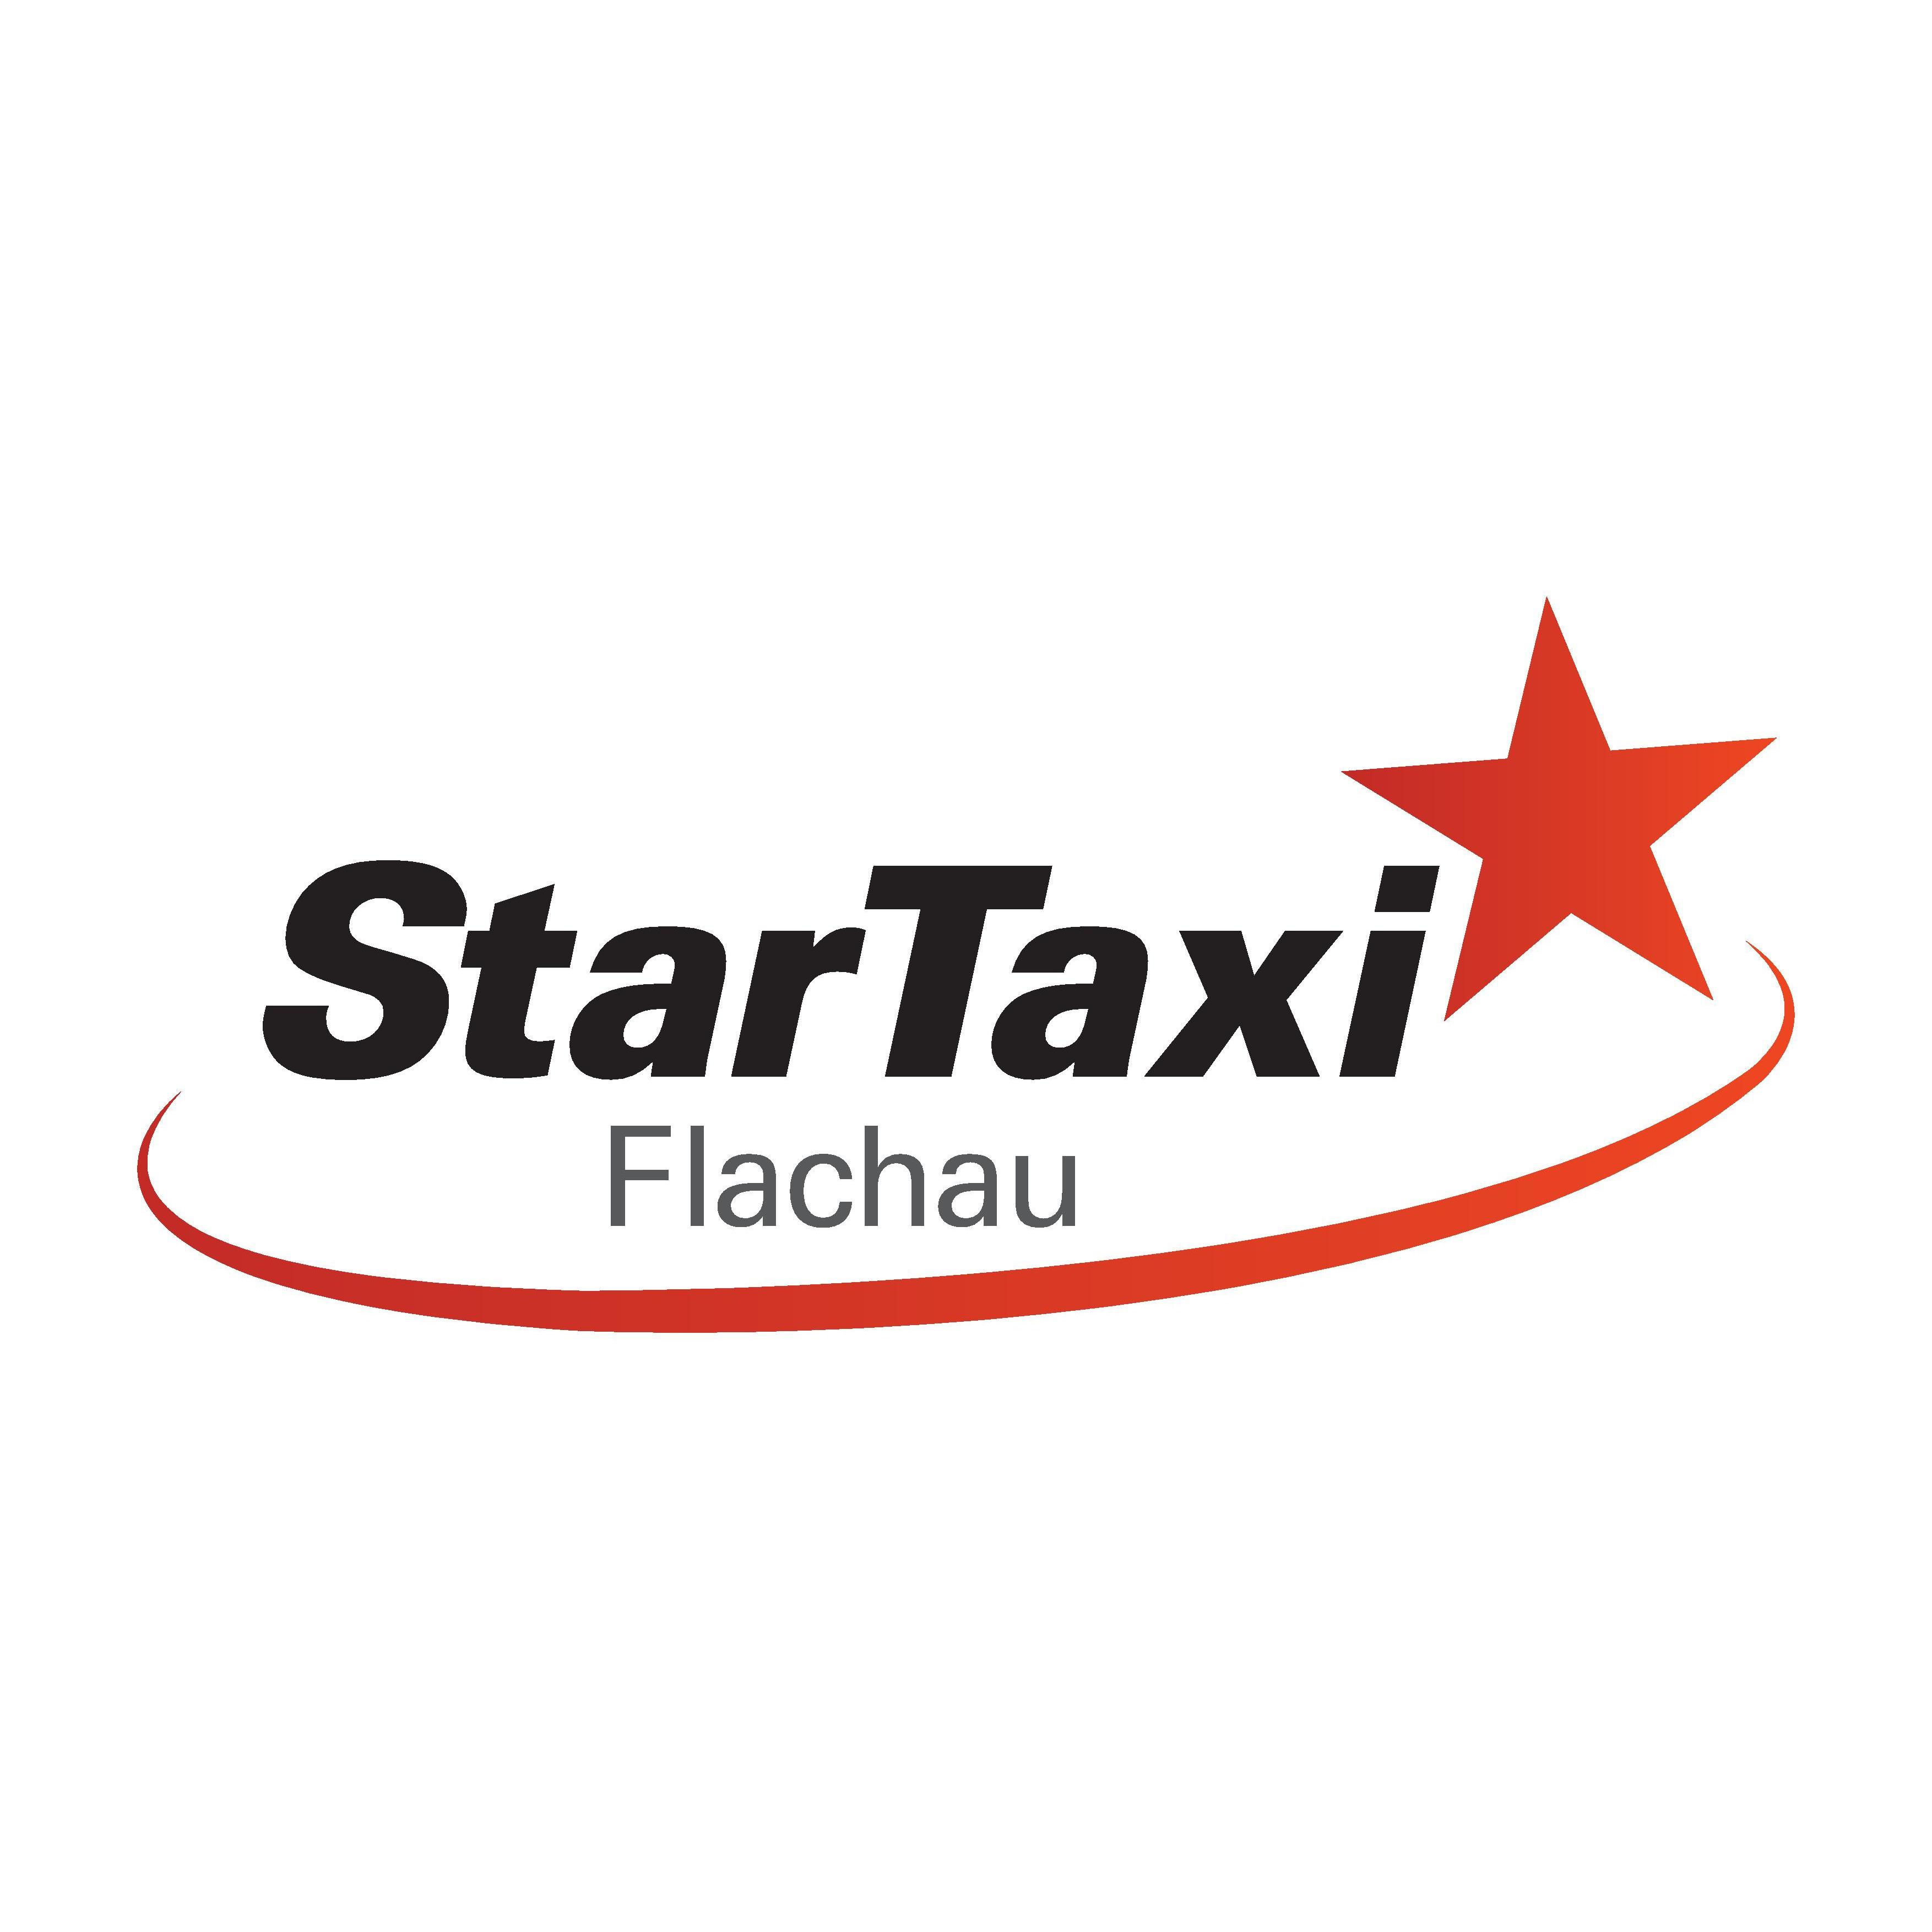 StarTaxi Flachau Flughafentransfer & Taxi Service